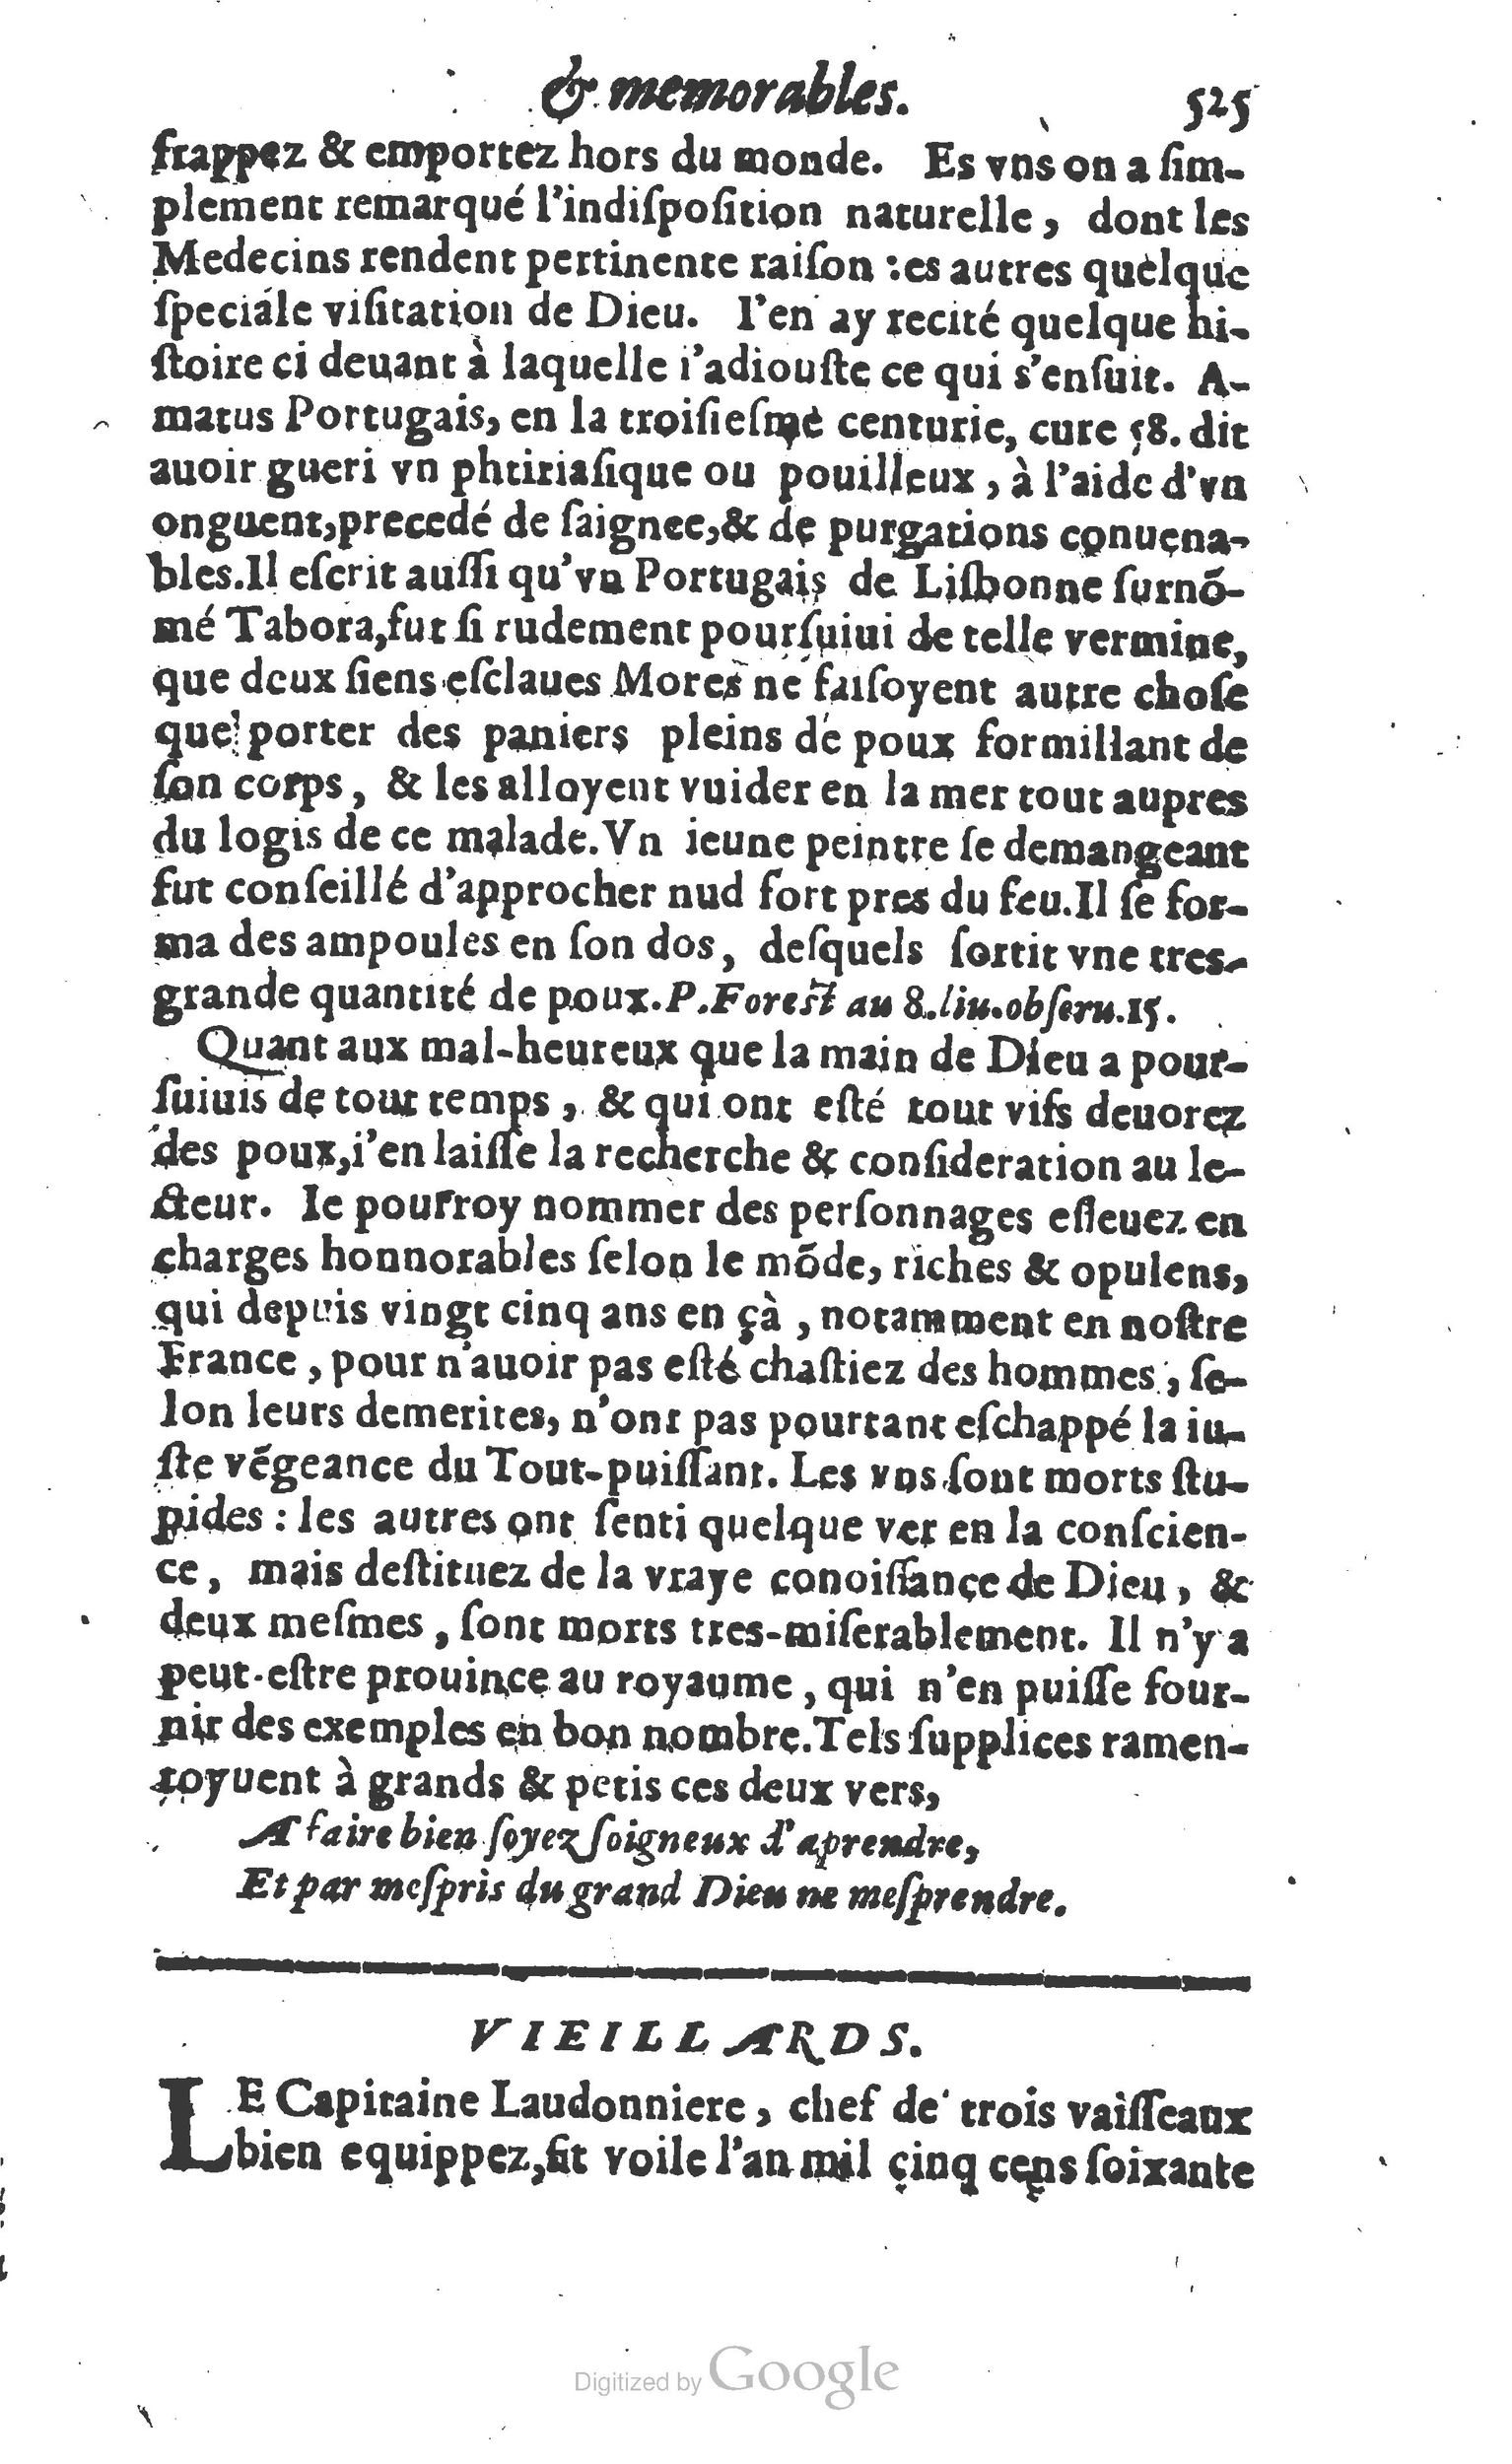 1610 Trésor d’histoires admirables et mémorables de nostre temps Marceau Princeton_Page_0546.jpg